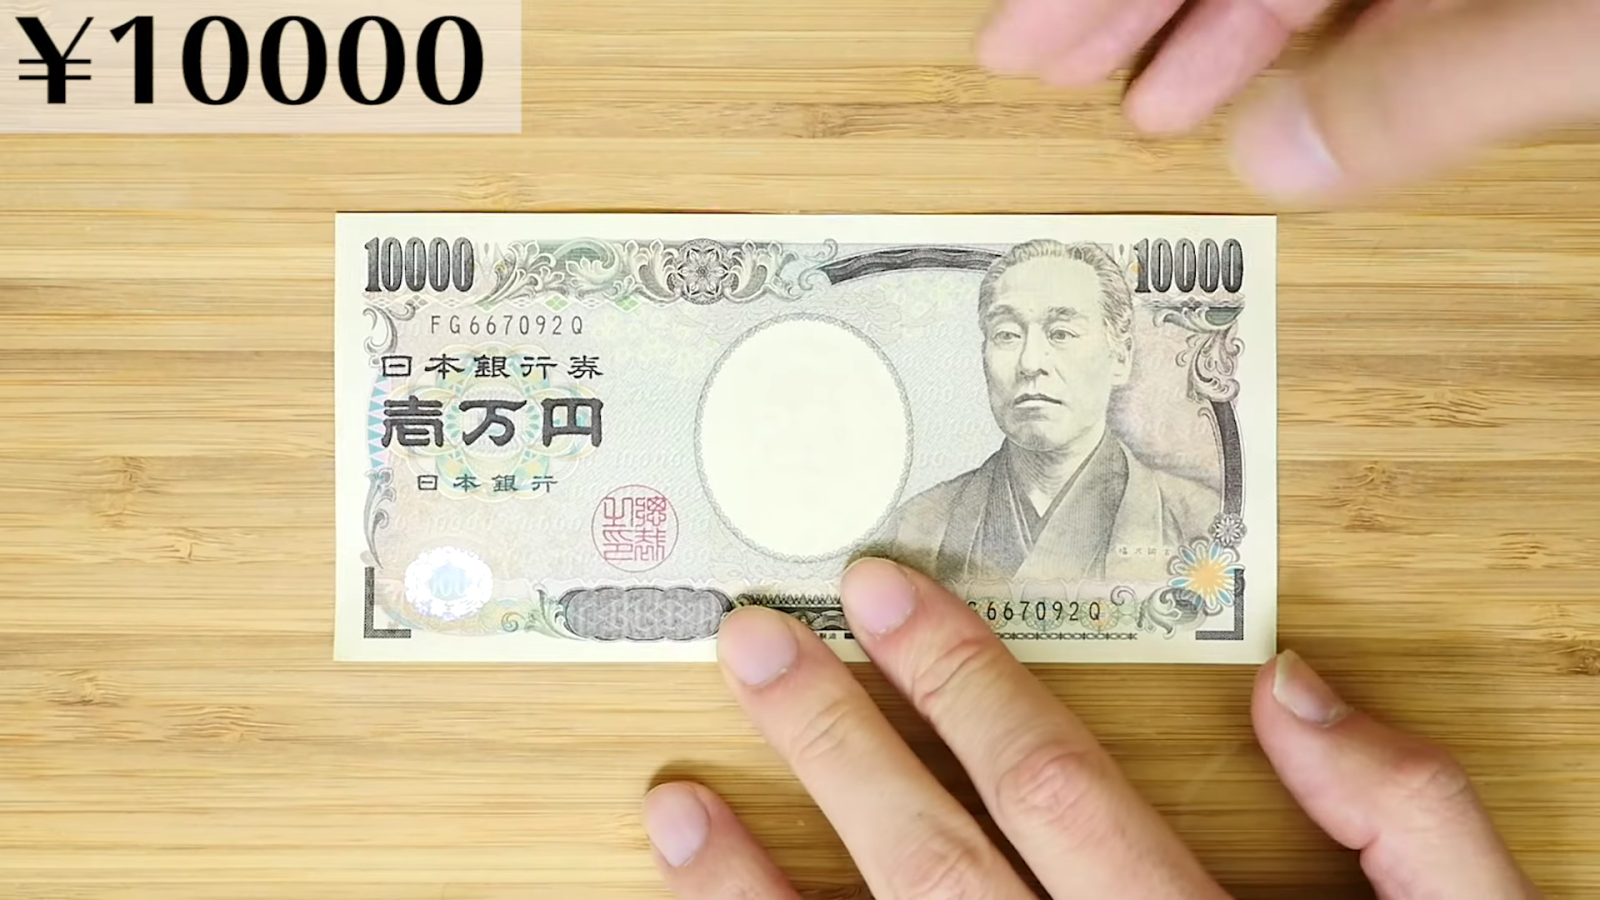 一万円を三つ折りにする男性